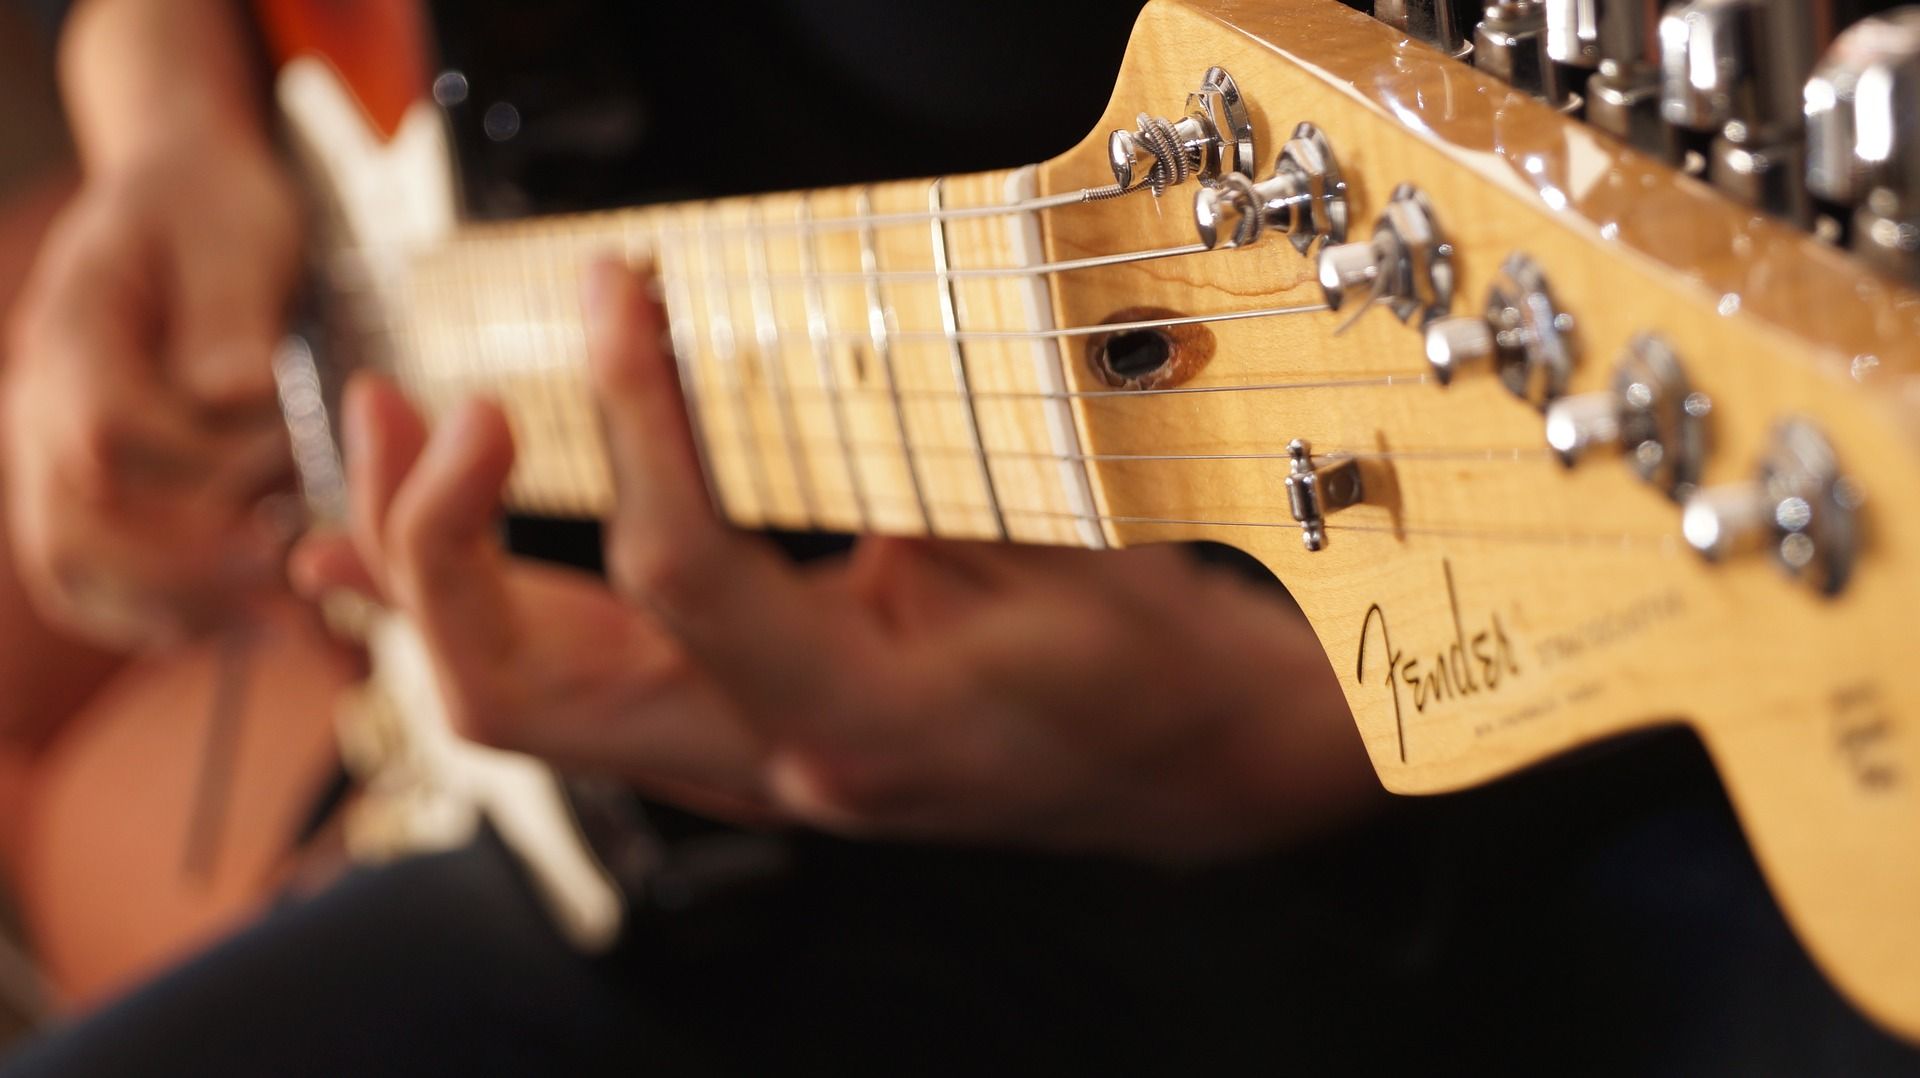 El fresno verde es la especie ideal para fabricar las emblemáticas guitarras de la marca Fender / Foto: JaniSnellman - Pixabay